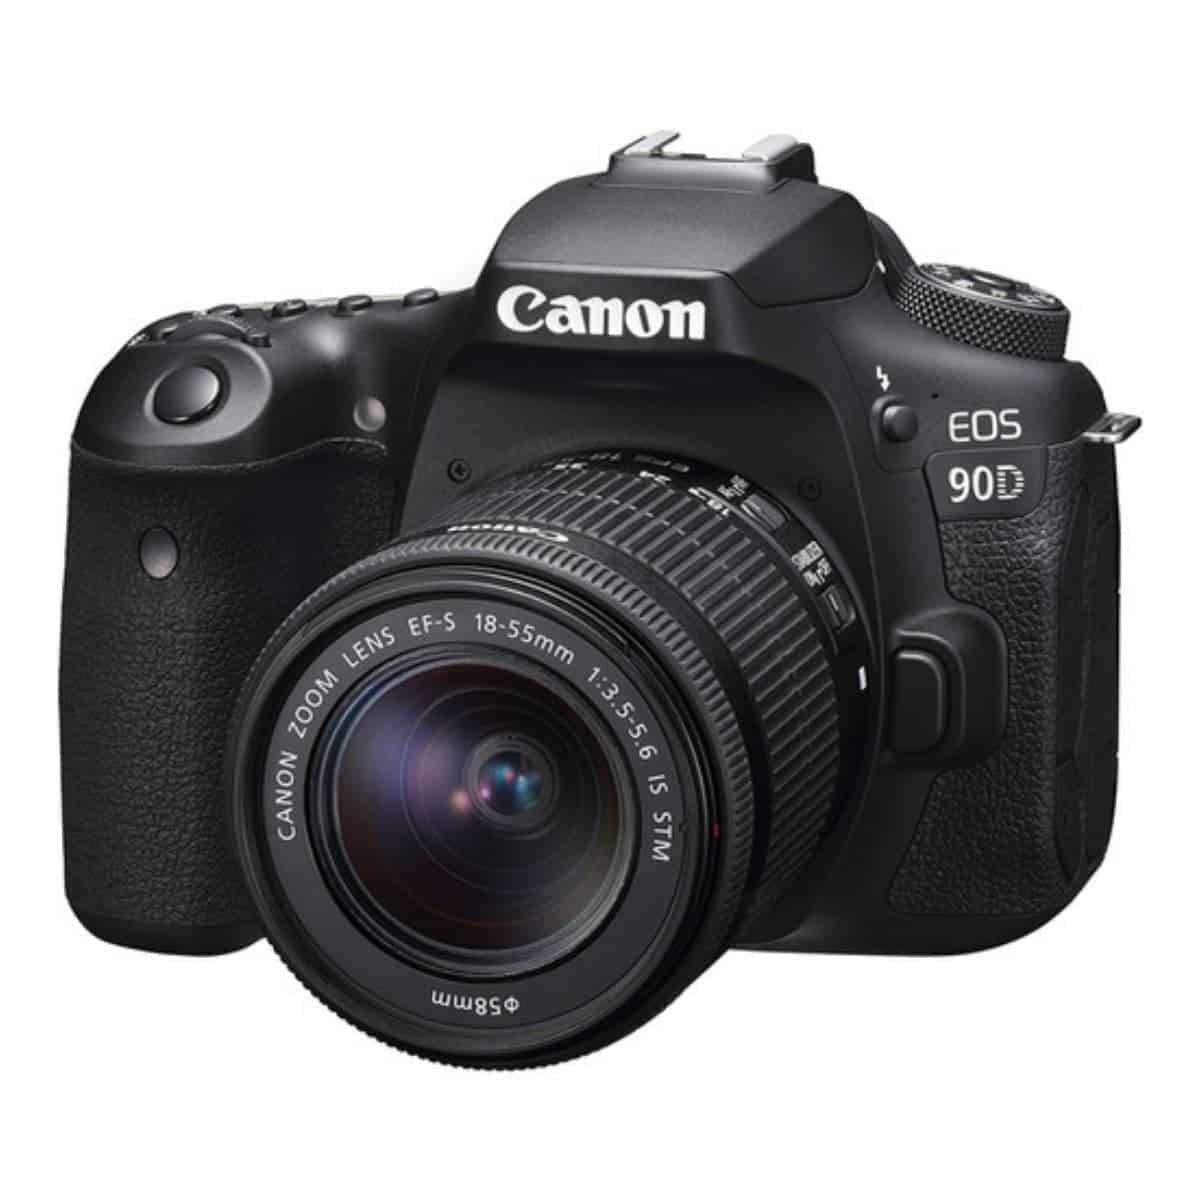 Canon EOS 90D camera.